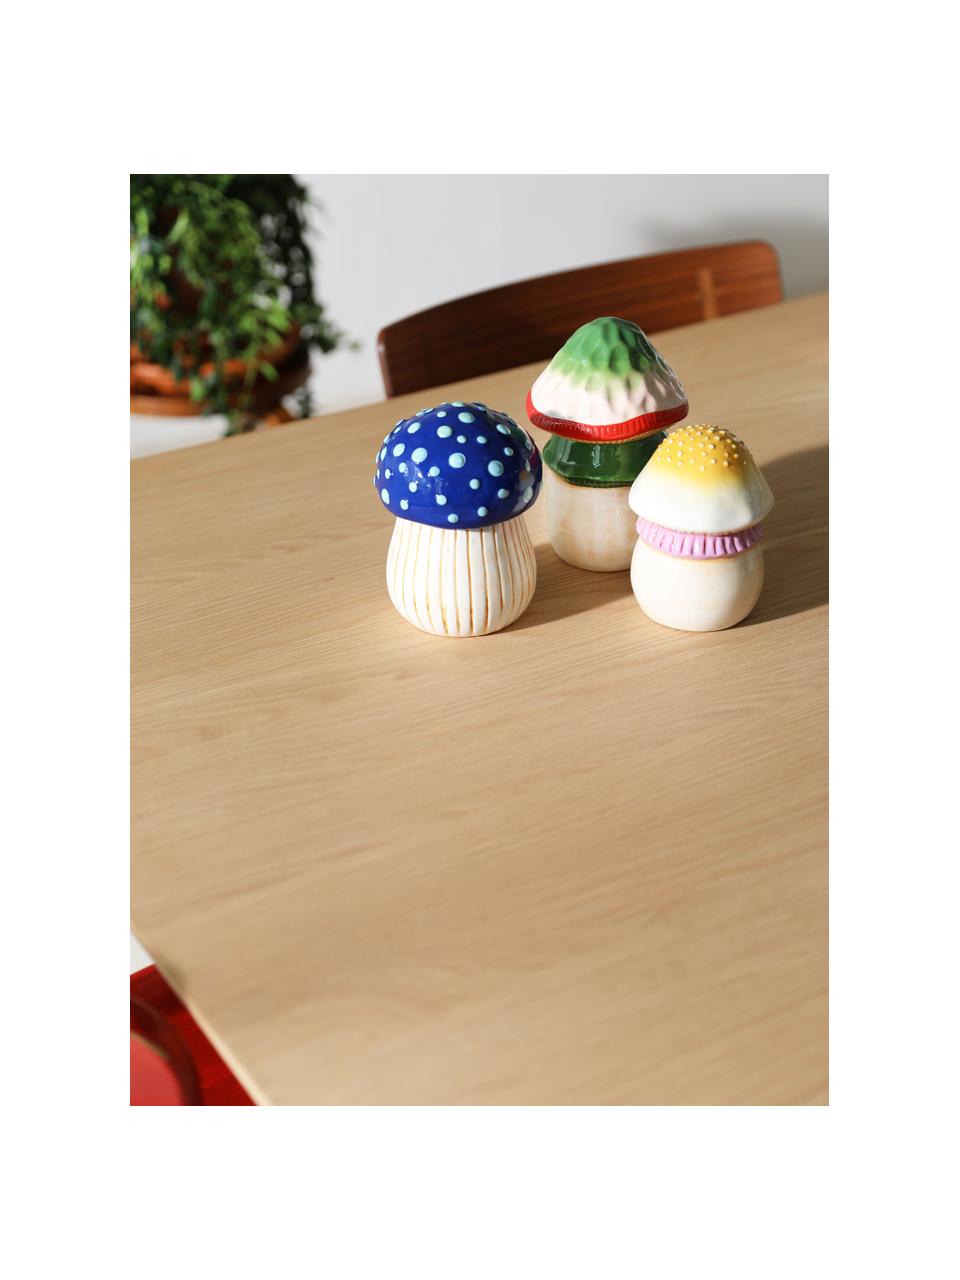 Handbemalte Aufbewahrungsdose Magic Mushroom aus Dolomit, Dolomit, Rosa, Off White, Sonnengelb, Ø 12 x H 15 cm